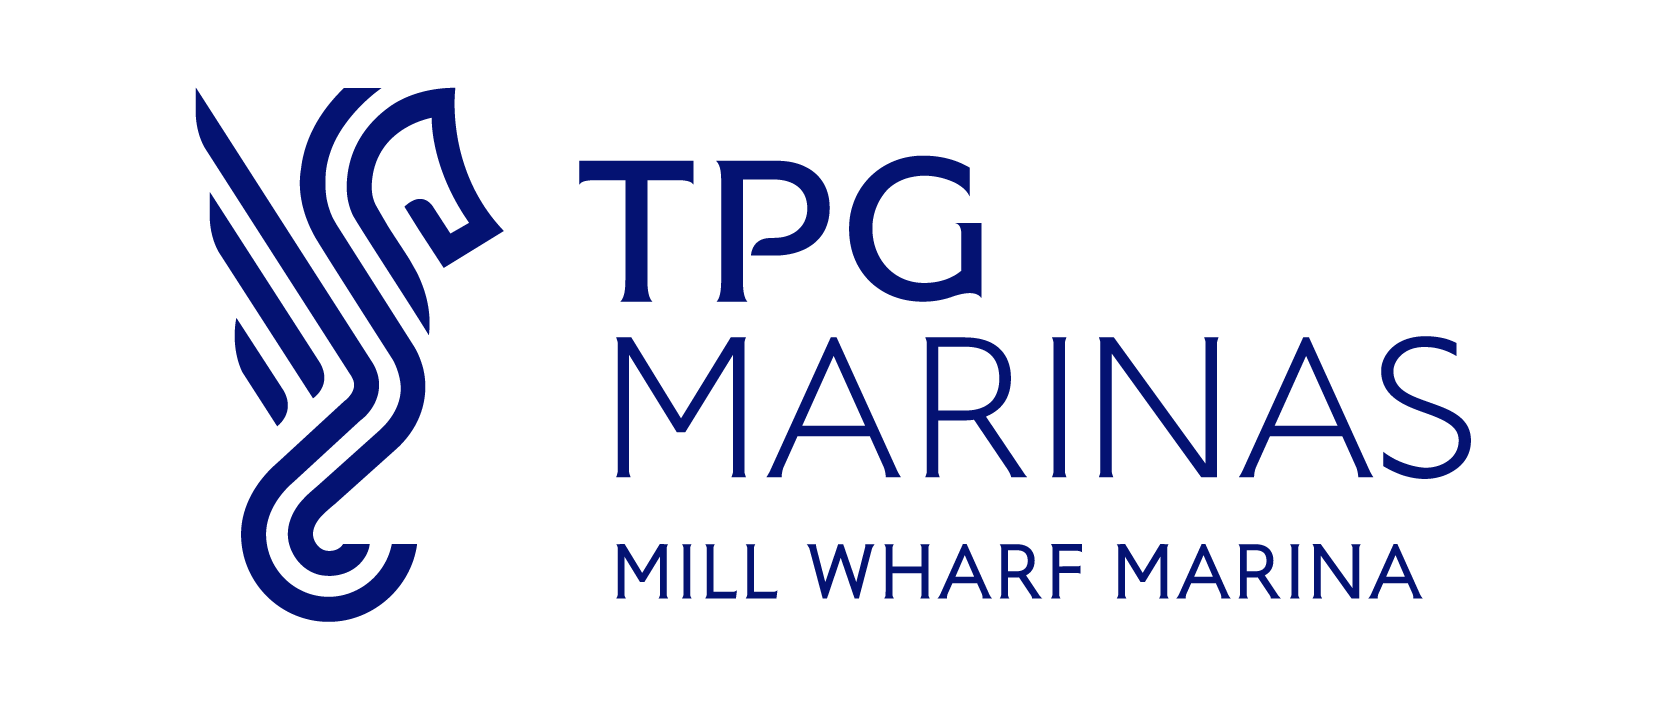 Mill Wharf Marina